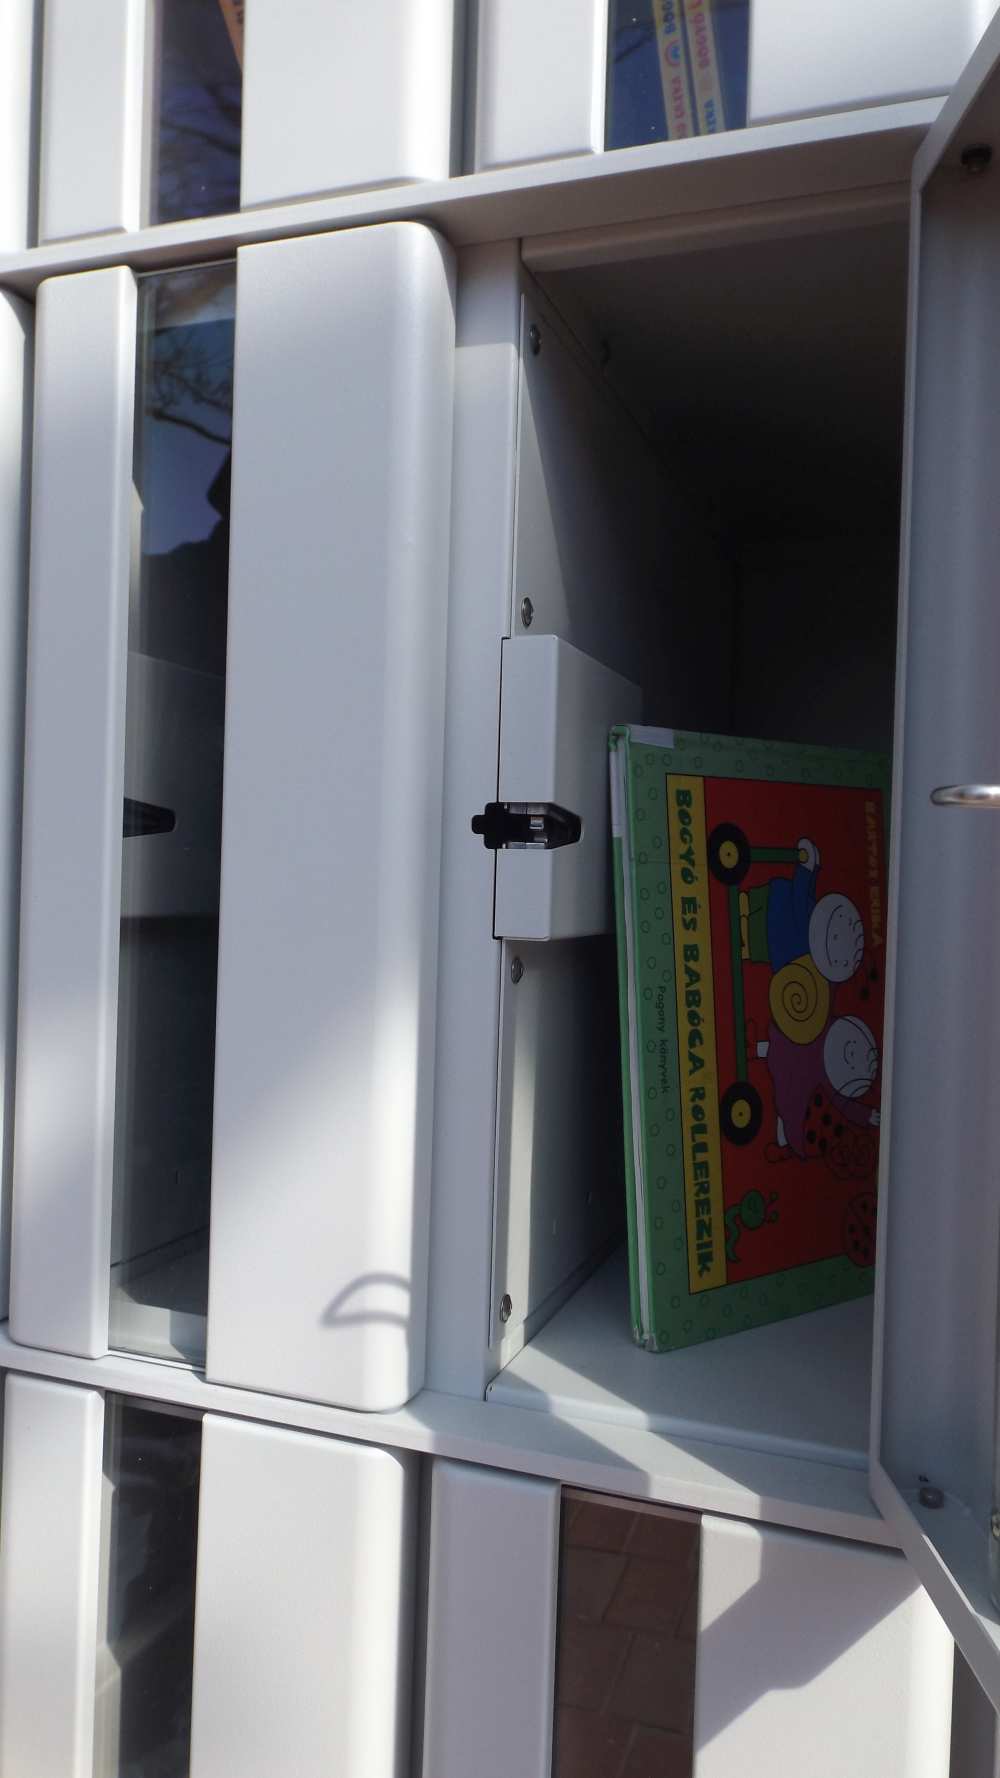 A Méliusz Juhász Péter Könyvtár új szolgáltatása a koronavírus-járvány idején: a Központi Könyvtár bejáratánál már egy automata (locker) segítségével is lehet könyvet, illetve egyéb dokumentumokat kölcsönözni és visszaadni. 